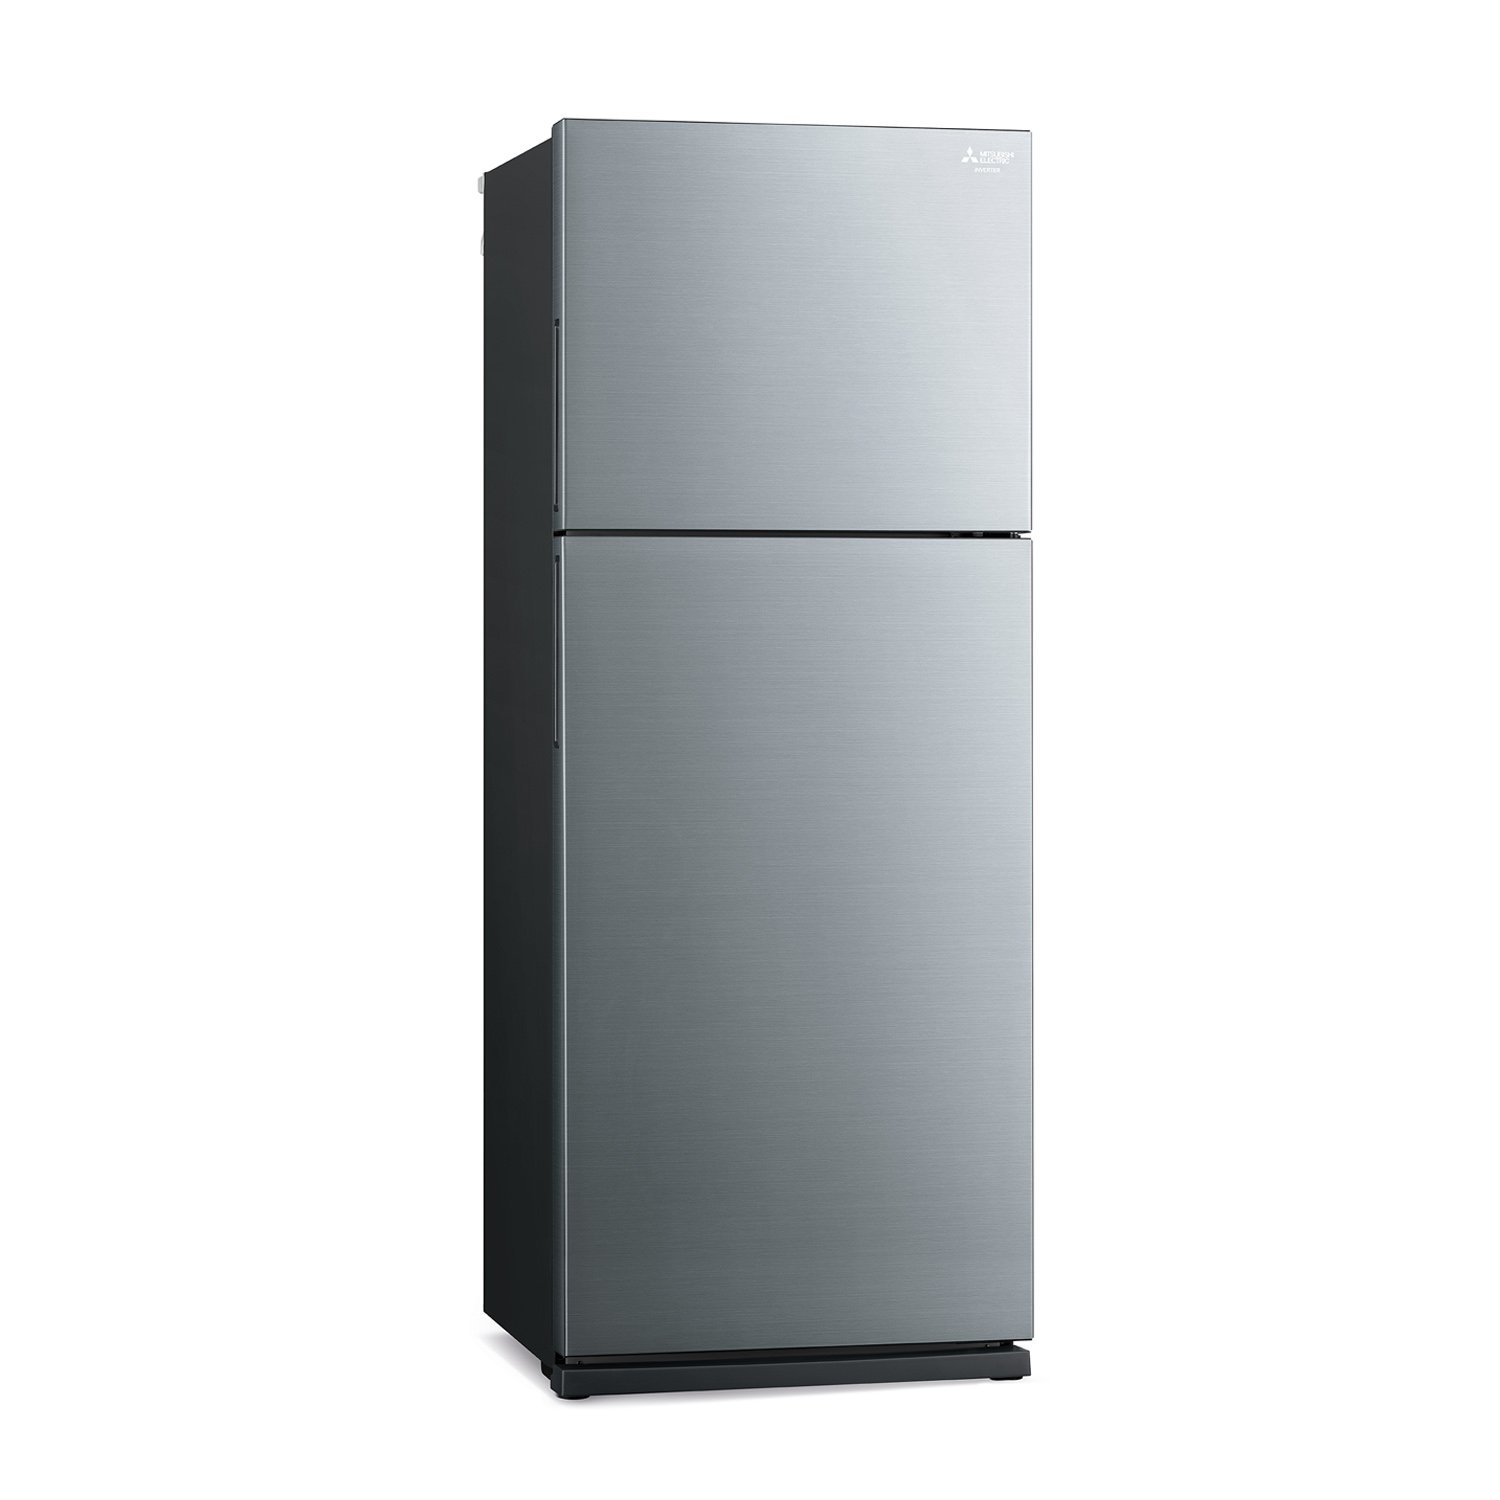 MITSUBISHI ELECTRIC ตู้เย็น 2 ประตู 14.6 คิว รุ่น MR-FS45ES-SSL